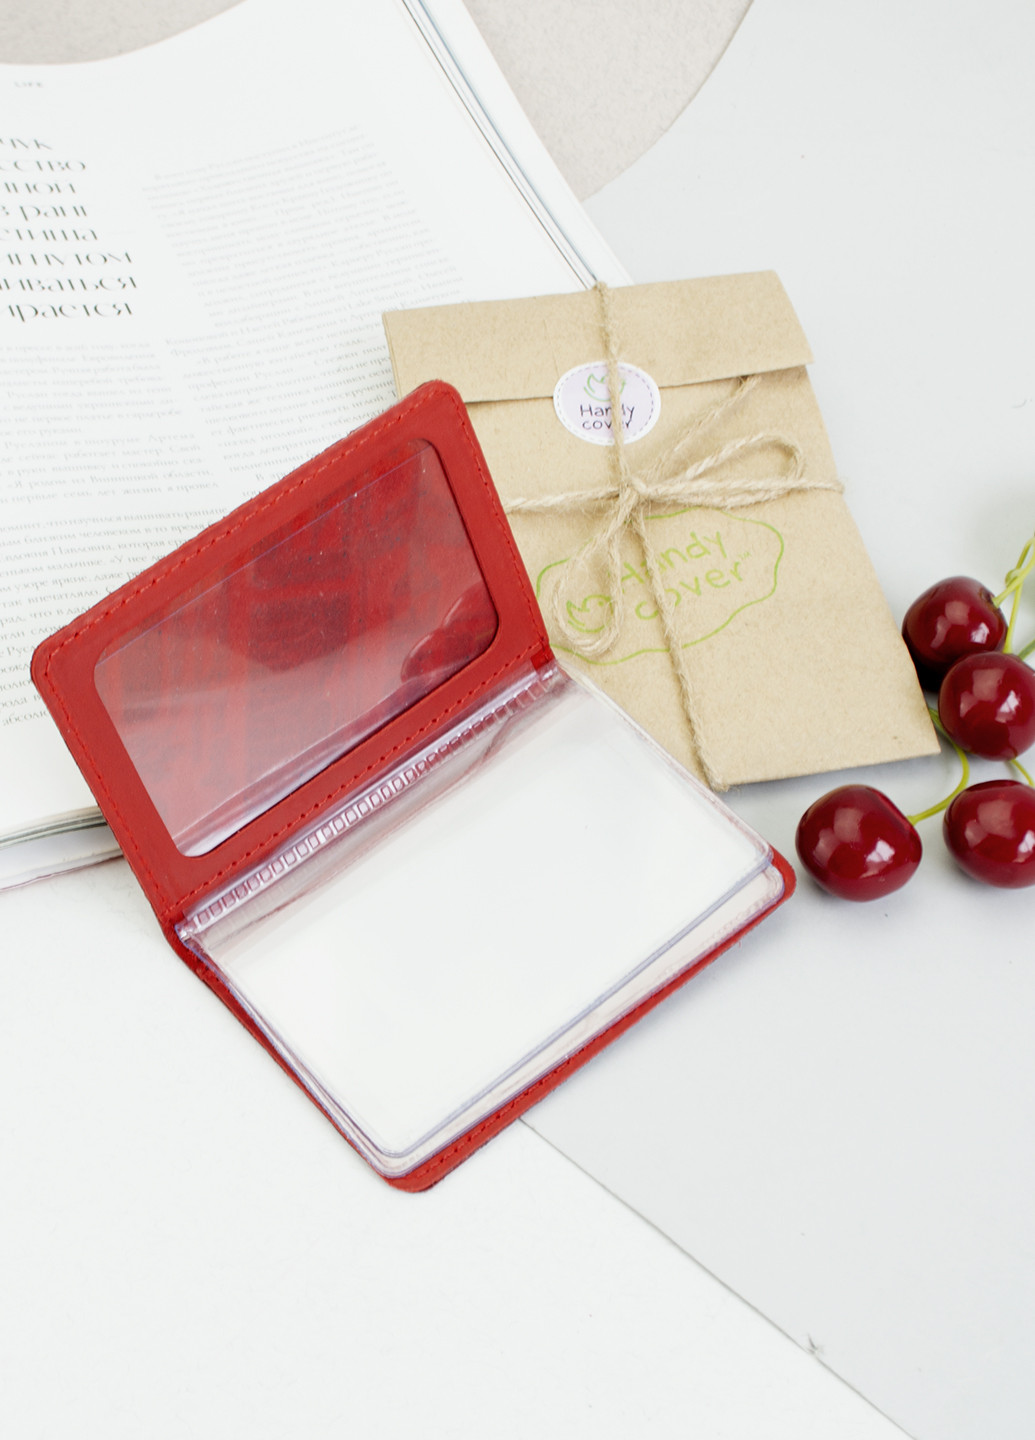 Подарочный женский набор №60 "Ukraine" (красный) в коробке: обложка на паспорт + права HandyCover (253582511)